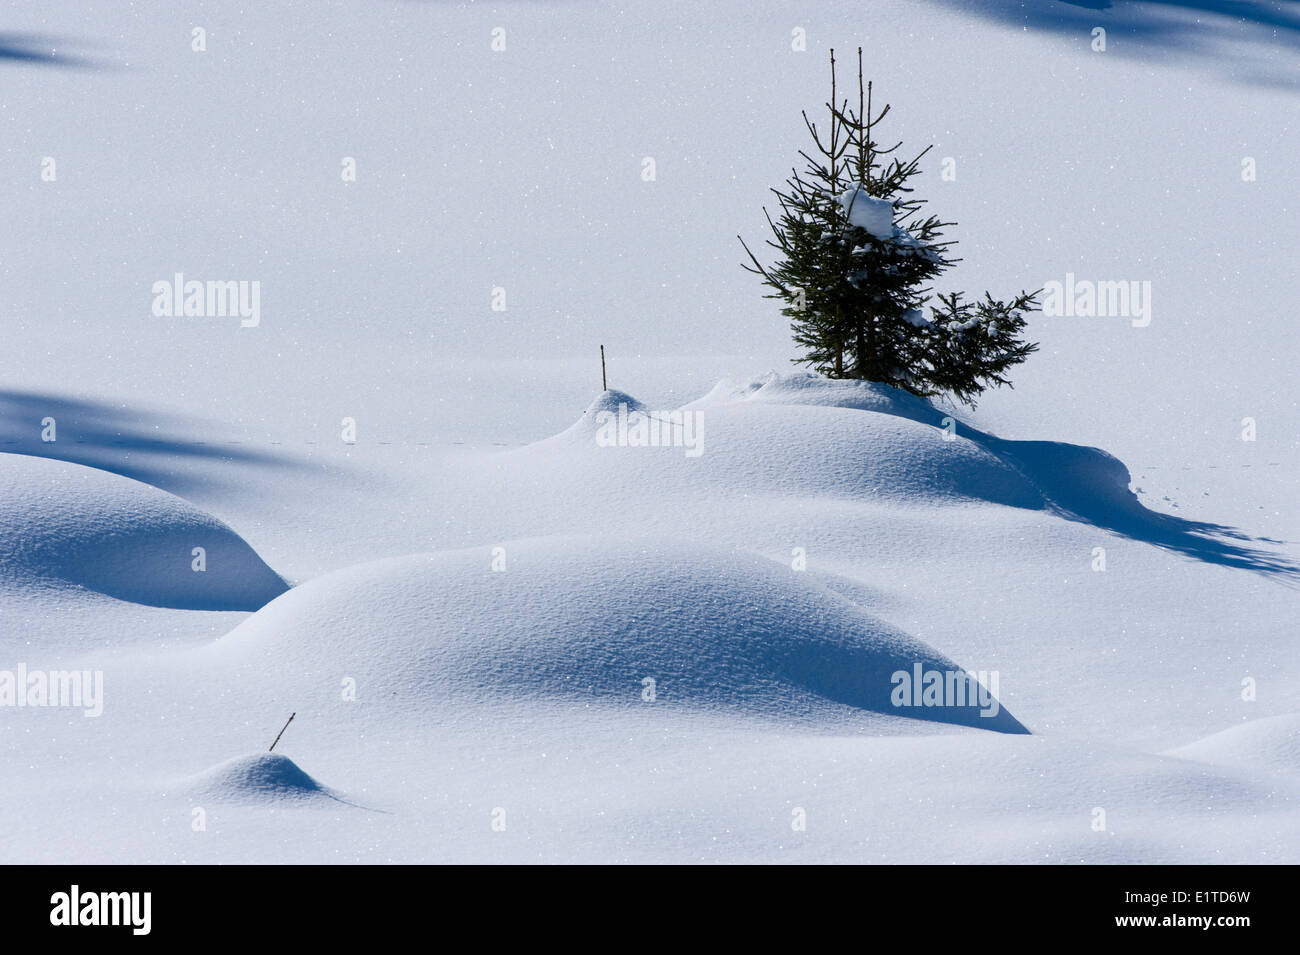 winterwonderland in nationaalpark bayerischer wald Stock Photo